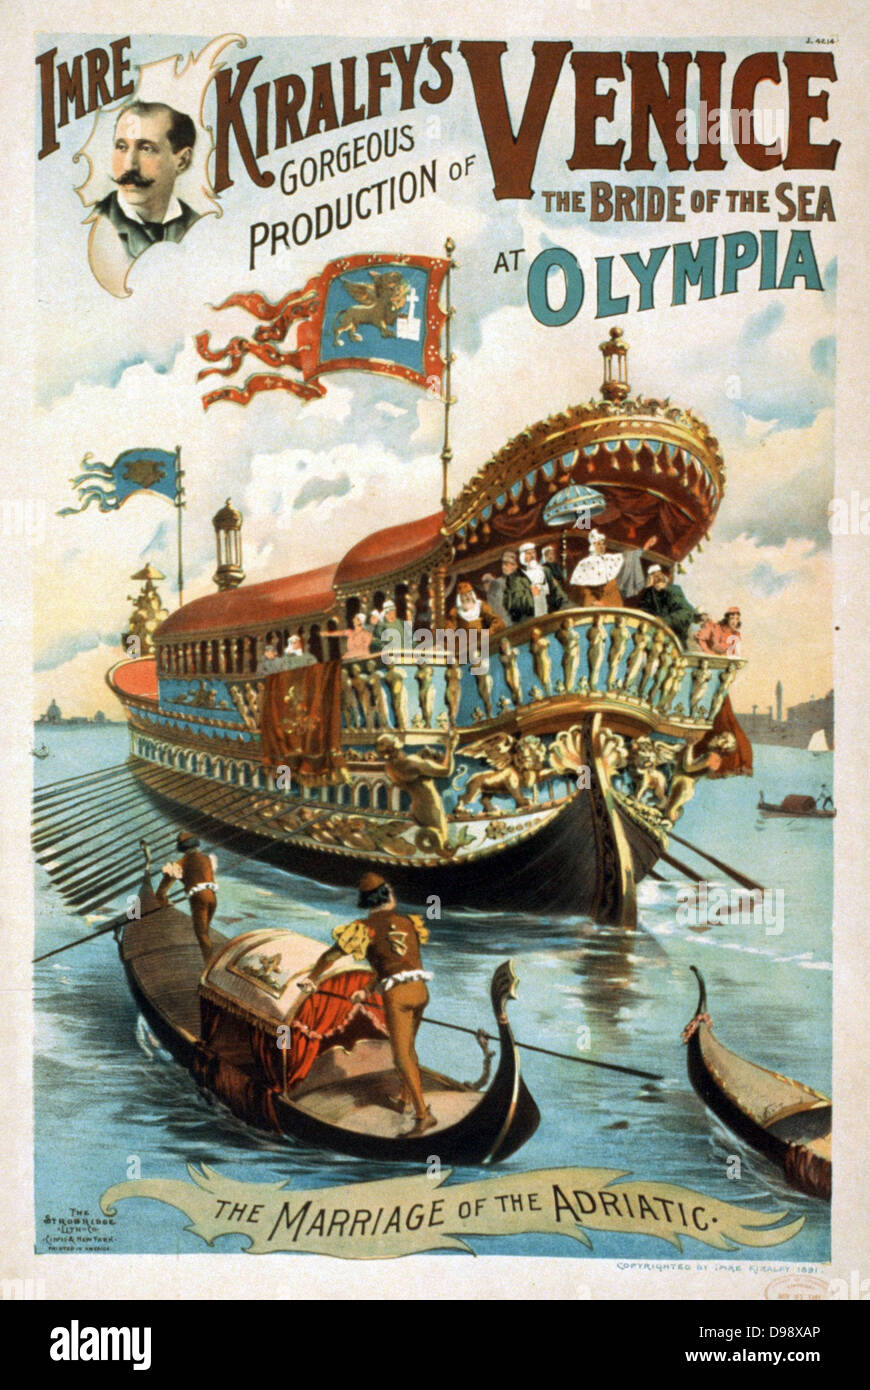 Titre : Imre Kiralfy est magnifique production de Venise, la fiancée de la mer, à l'Olympia Affiche conçue par Imre Kiralfy 1845-1919. c1891. Lithographie (affiche) Banque D'Images